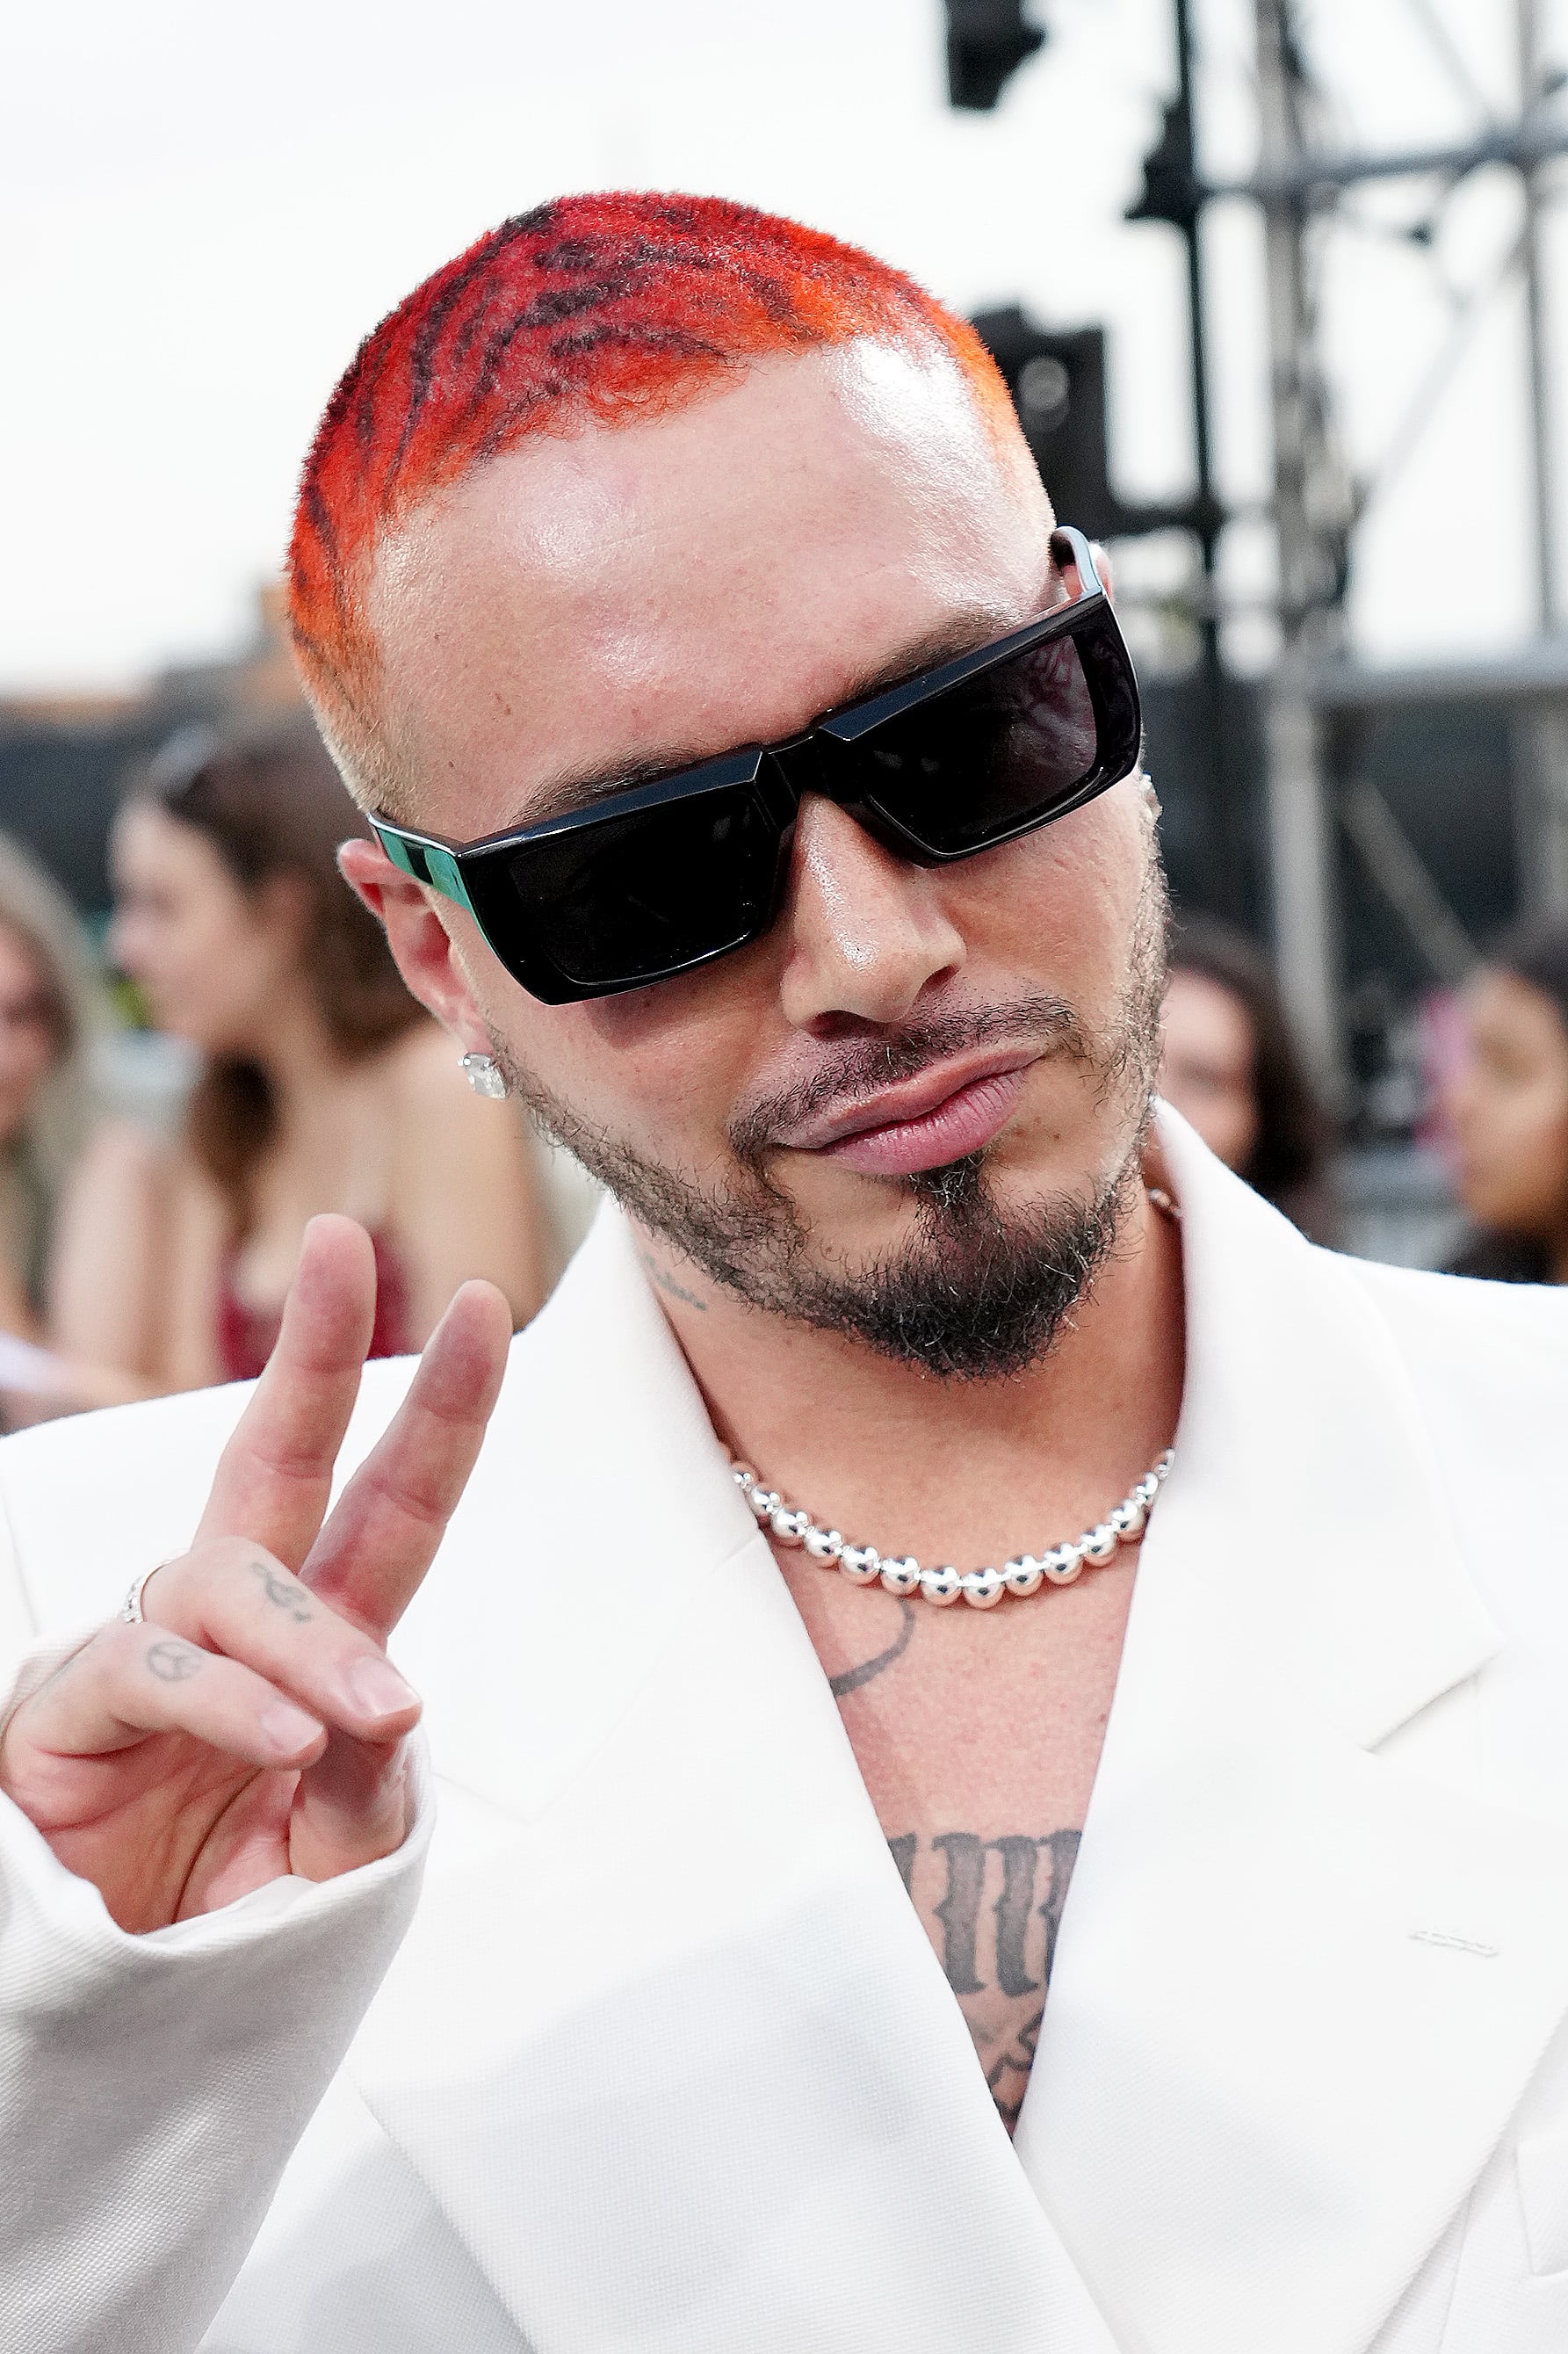 J Balvin's Tiger-Print Hair Color at the MTV VMAs 2022